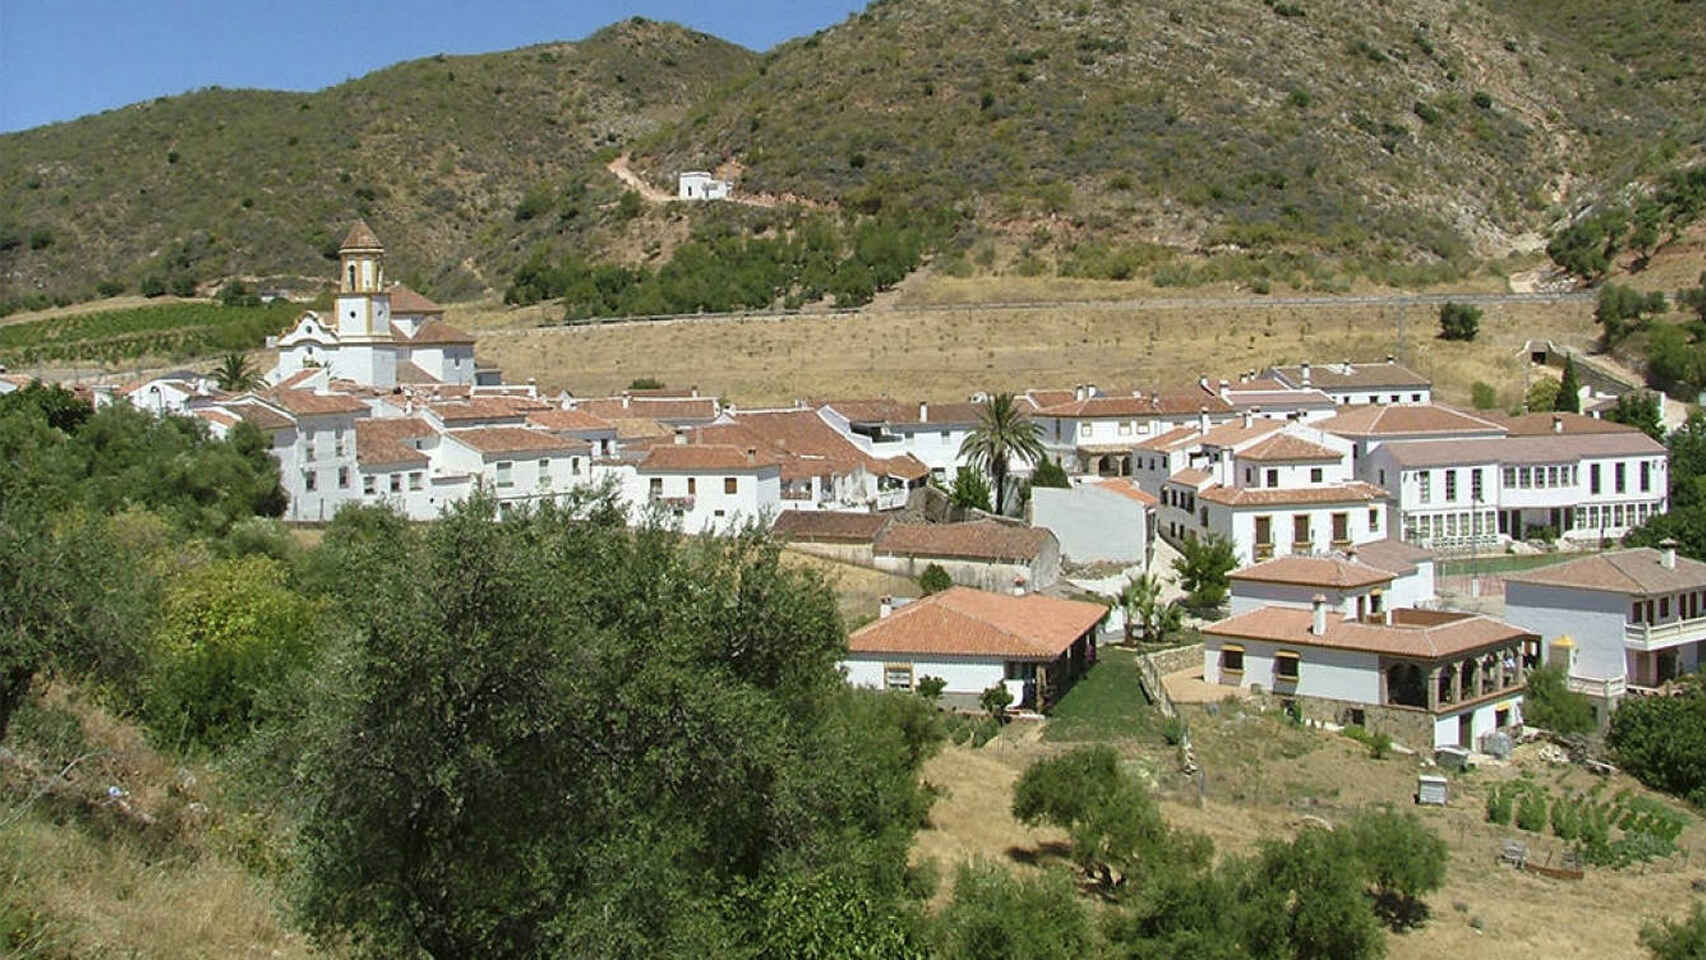 Vista del pueblo de Atajate, en la provincia de Málaga.